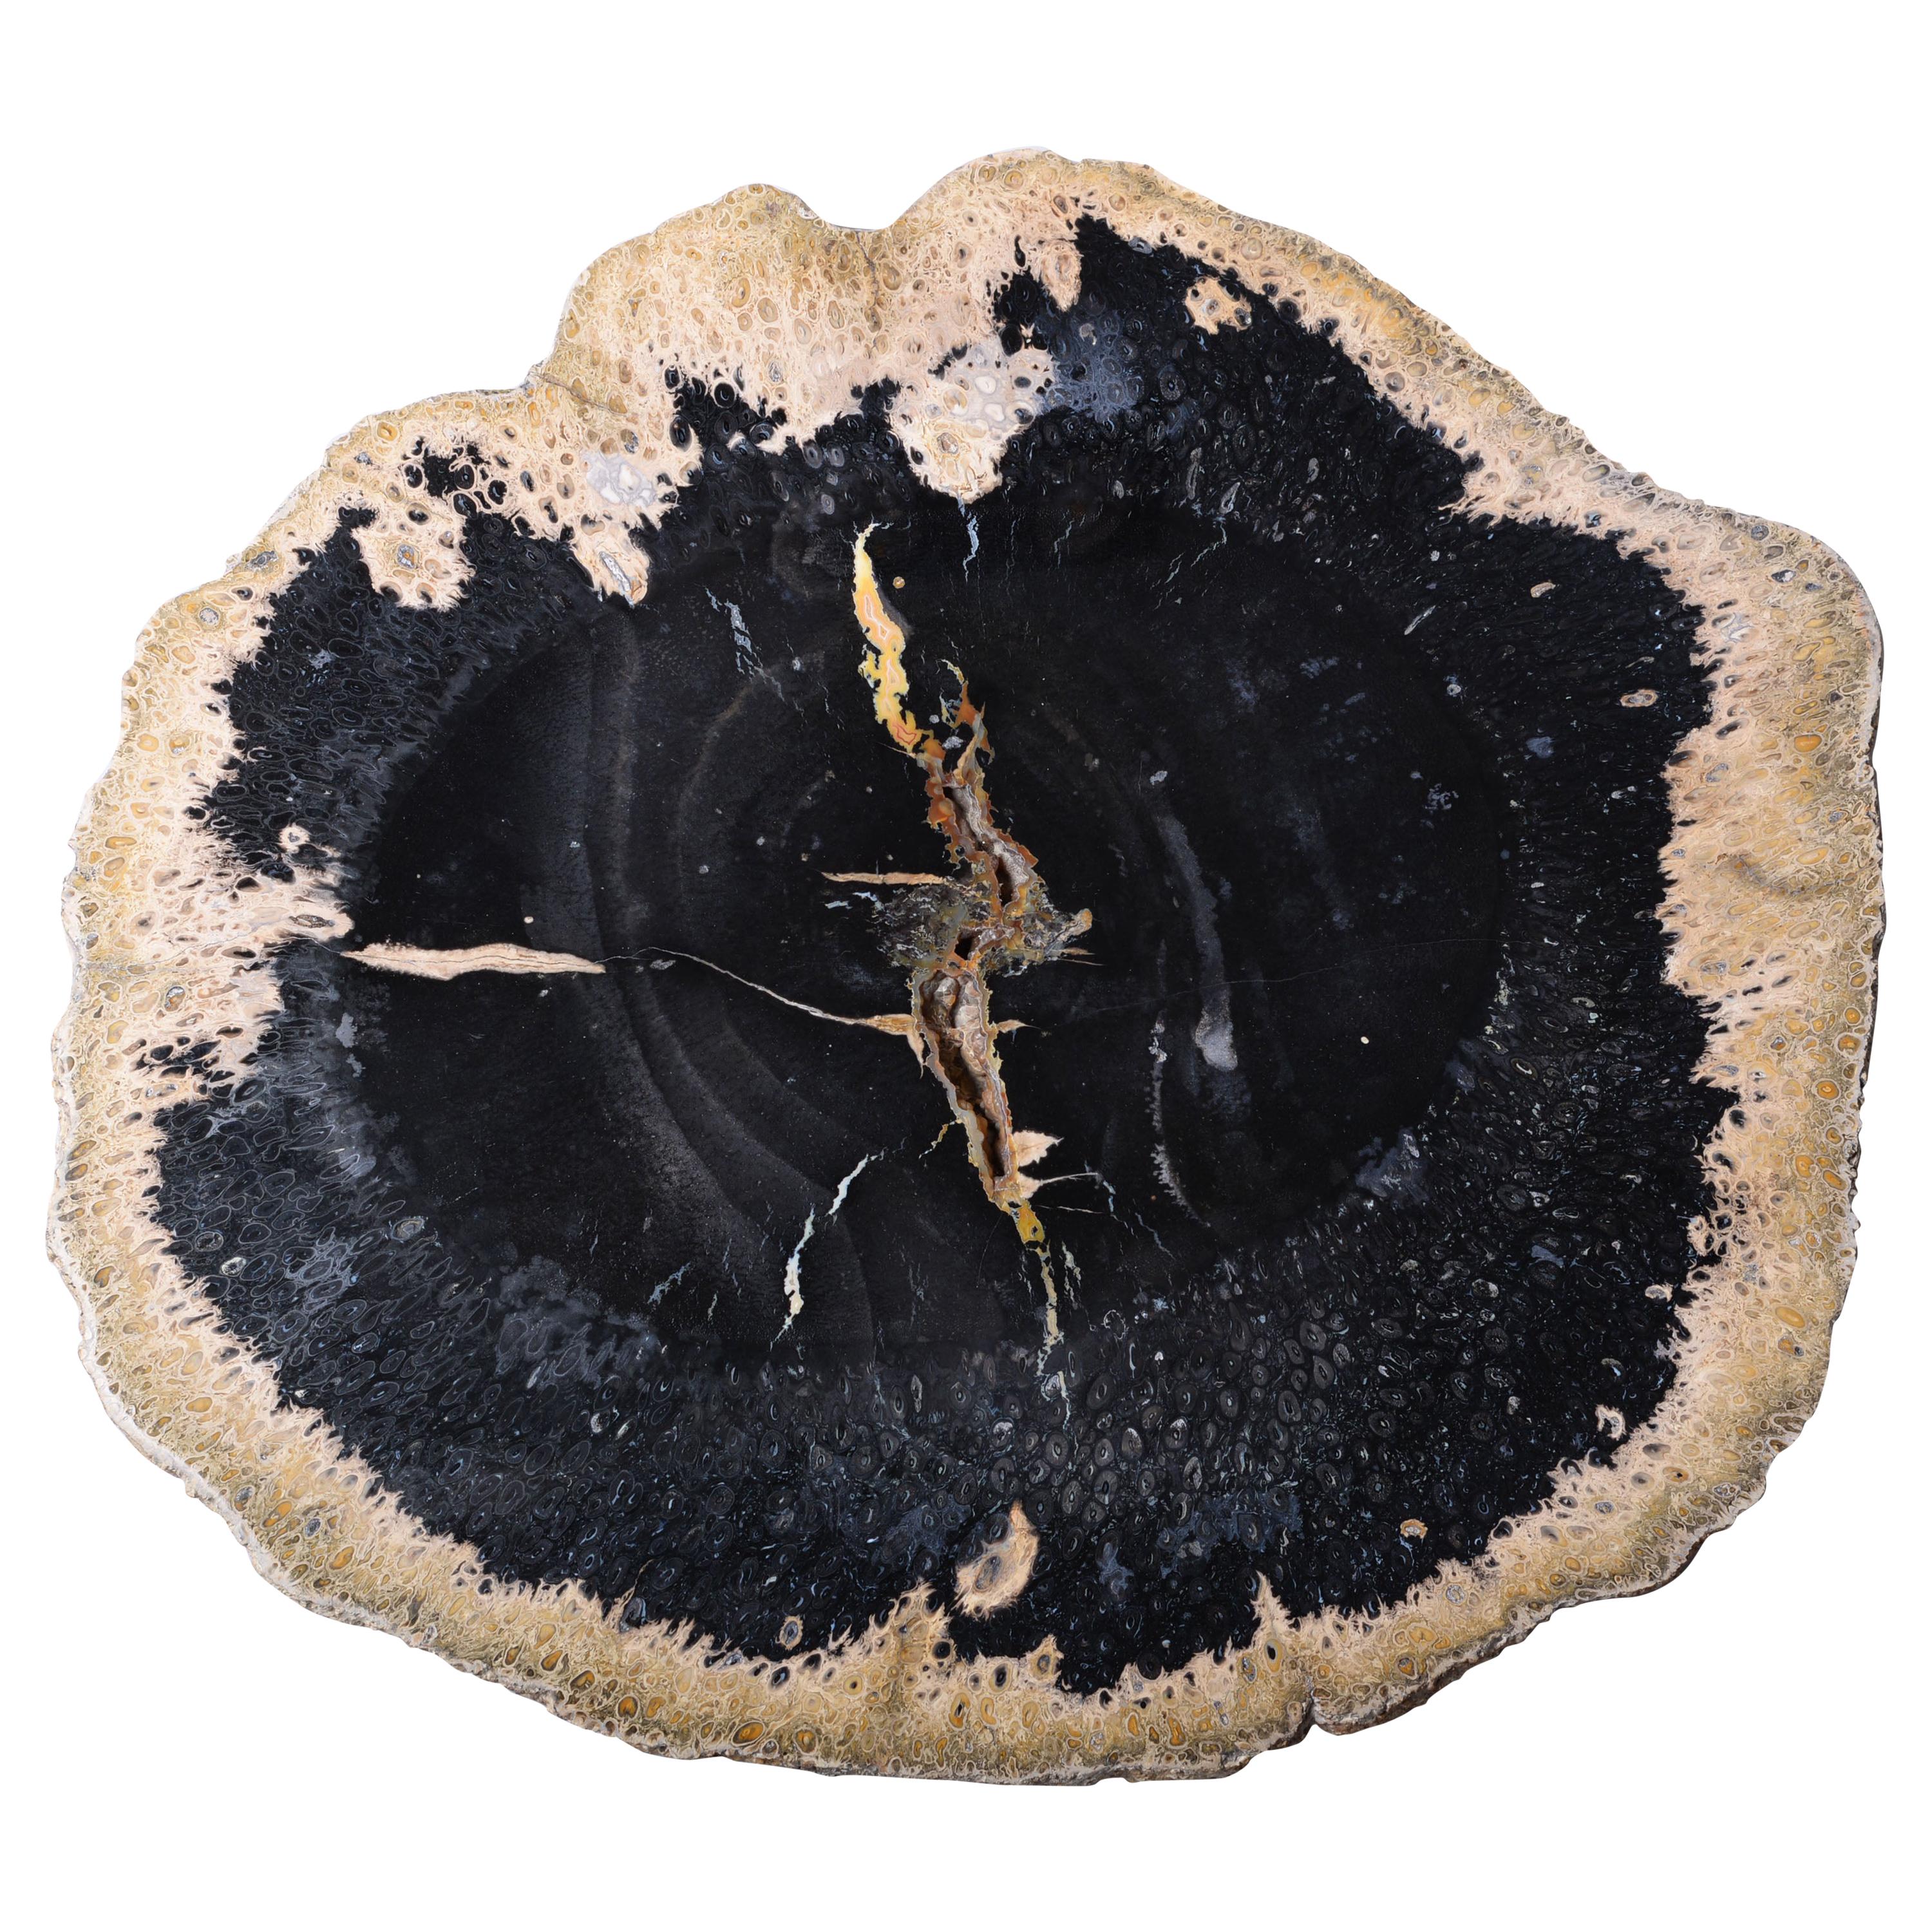 Giant Jet Black Petrified Palm Wood Fossil